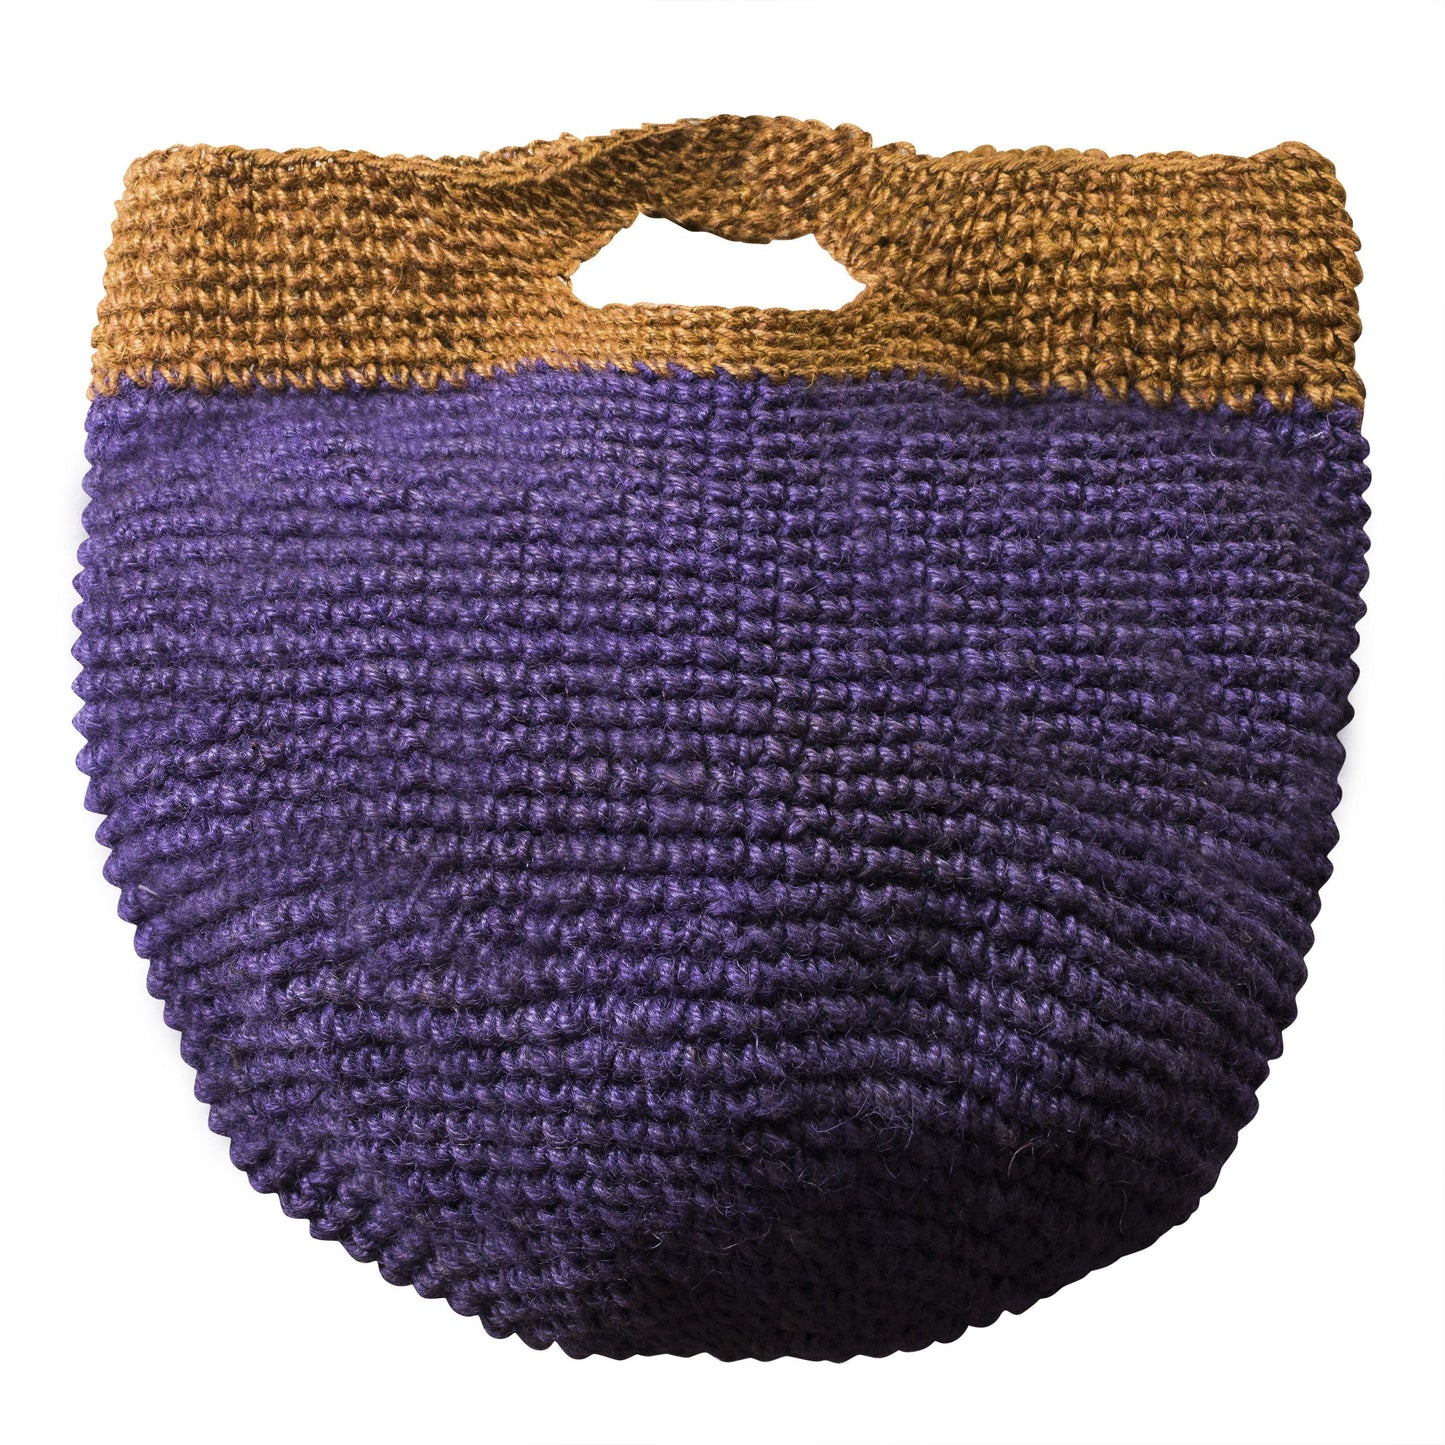 Handmade Crochet Hemp Bag - CCCollections